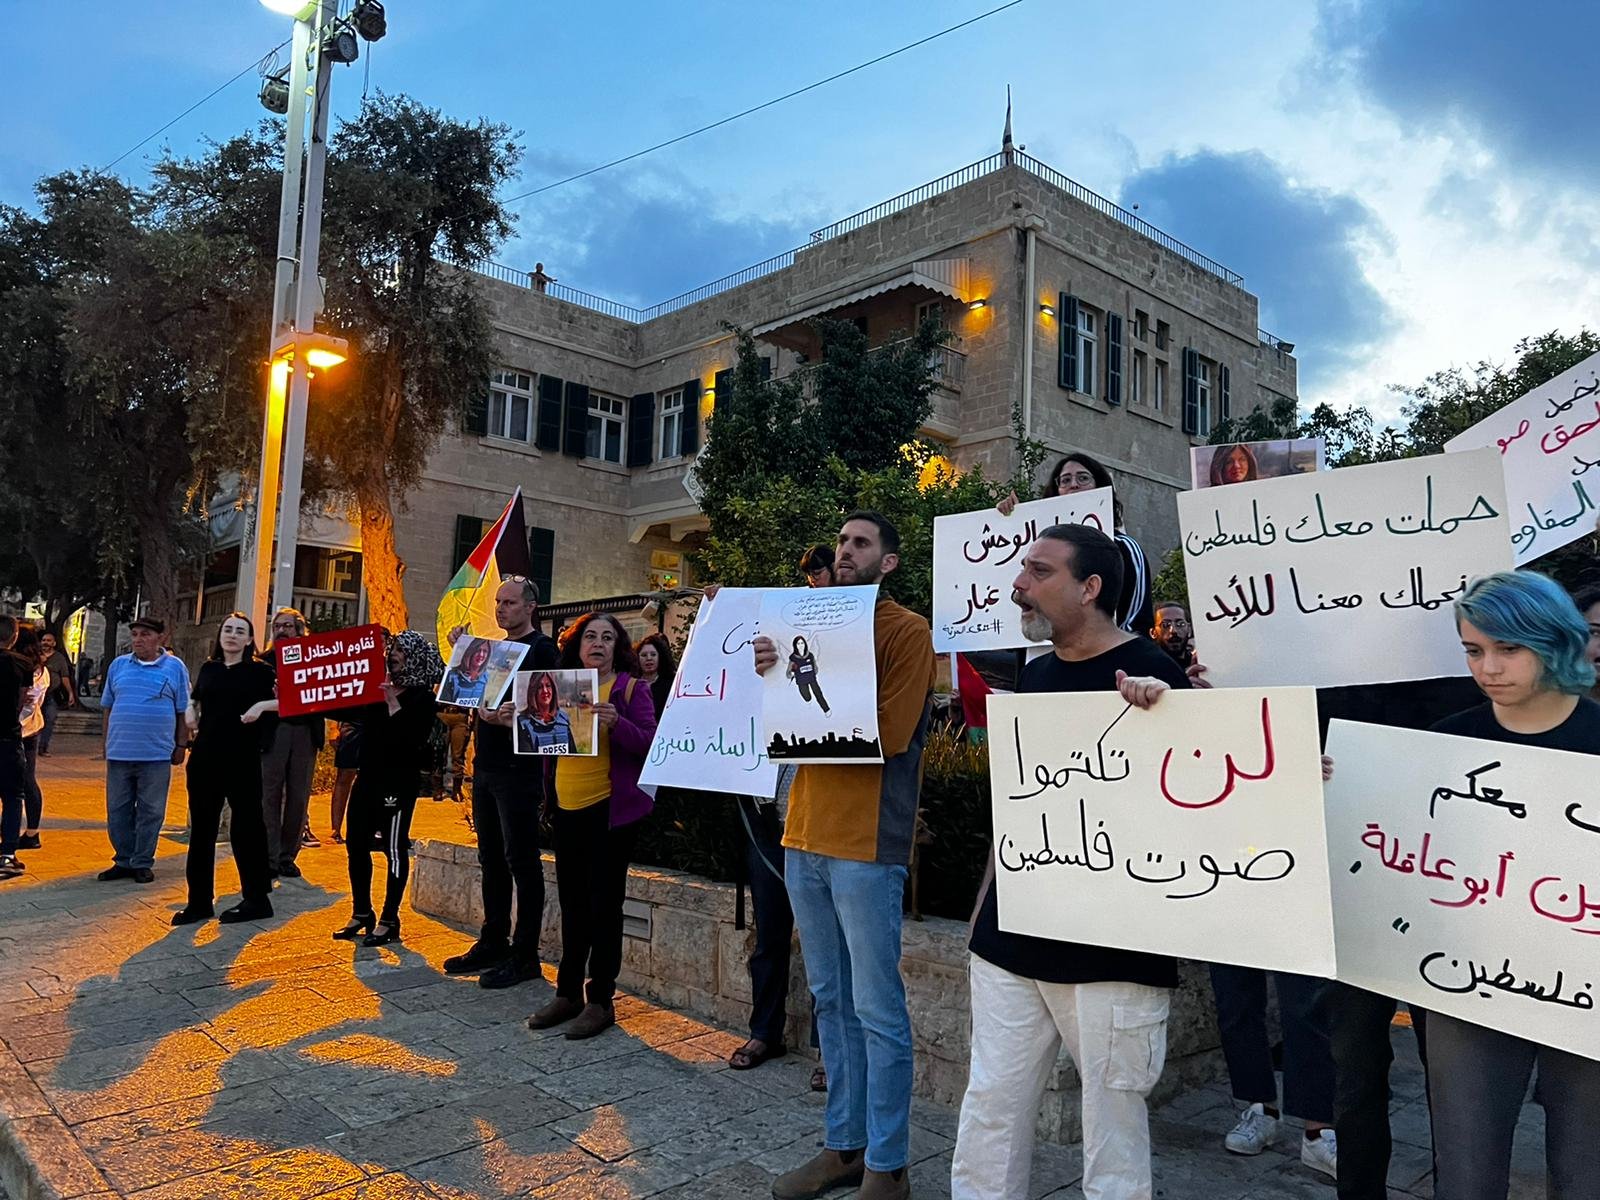 صور الشهيدة وأعلام فلسطينية وإغلاق شارع| مظاهرة حاشدة في حيفا في أعقاب اغتيال شيرين أبو عاقلة-12